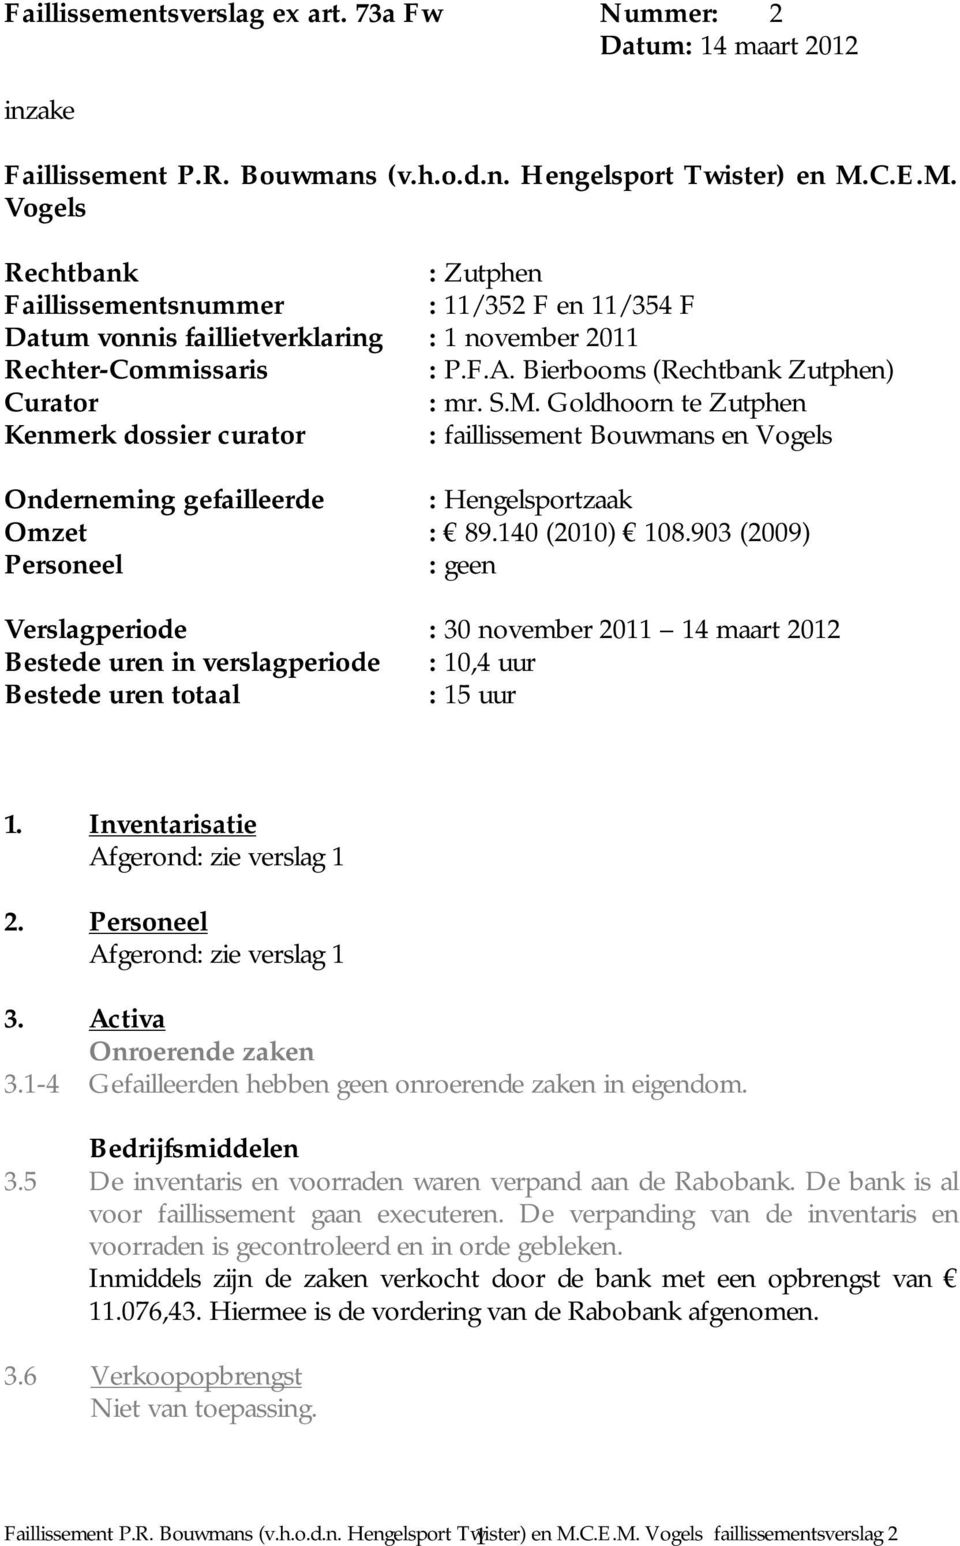 S.M. Goldhoorn te Zutphen Kenmerk dossier curator : faillissement Bouwmans en Vogels Onderneming gefailleerde : Hengelsportzaak Omzet : 89.140 (2010) 108.